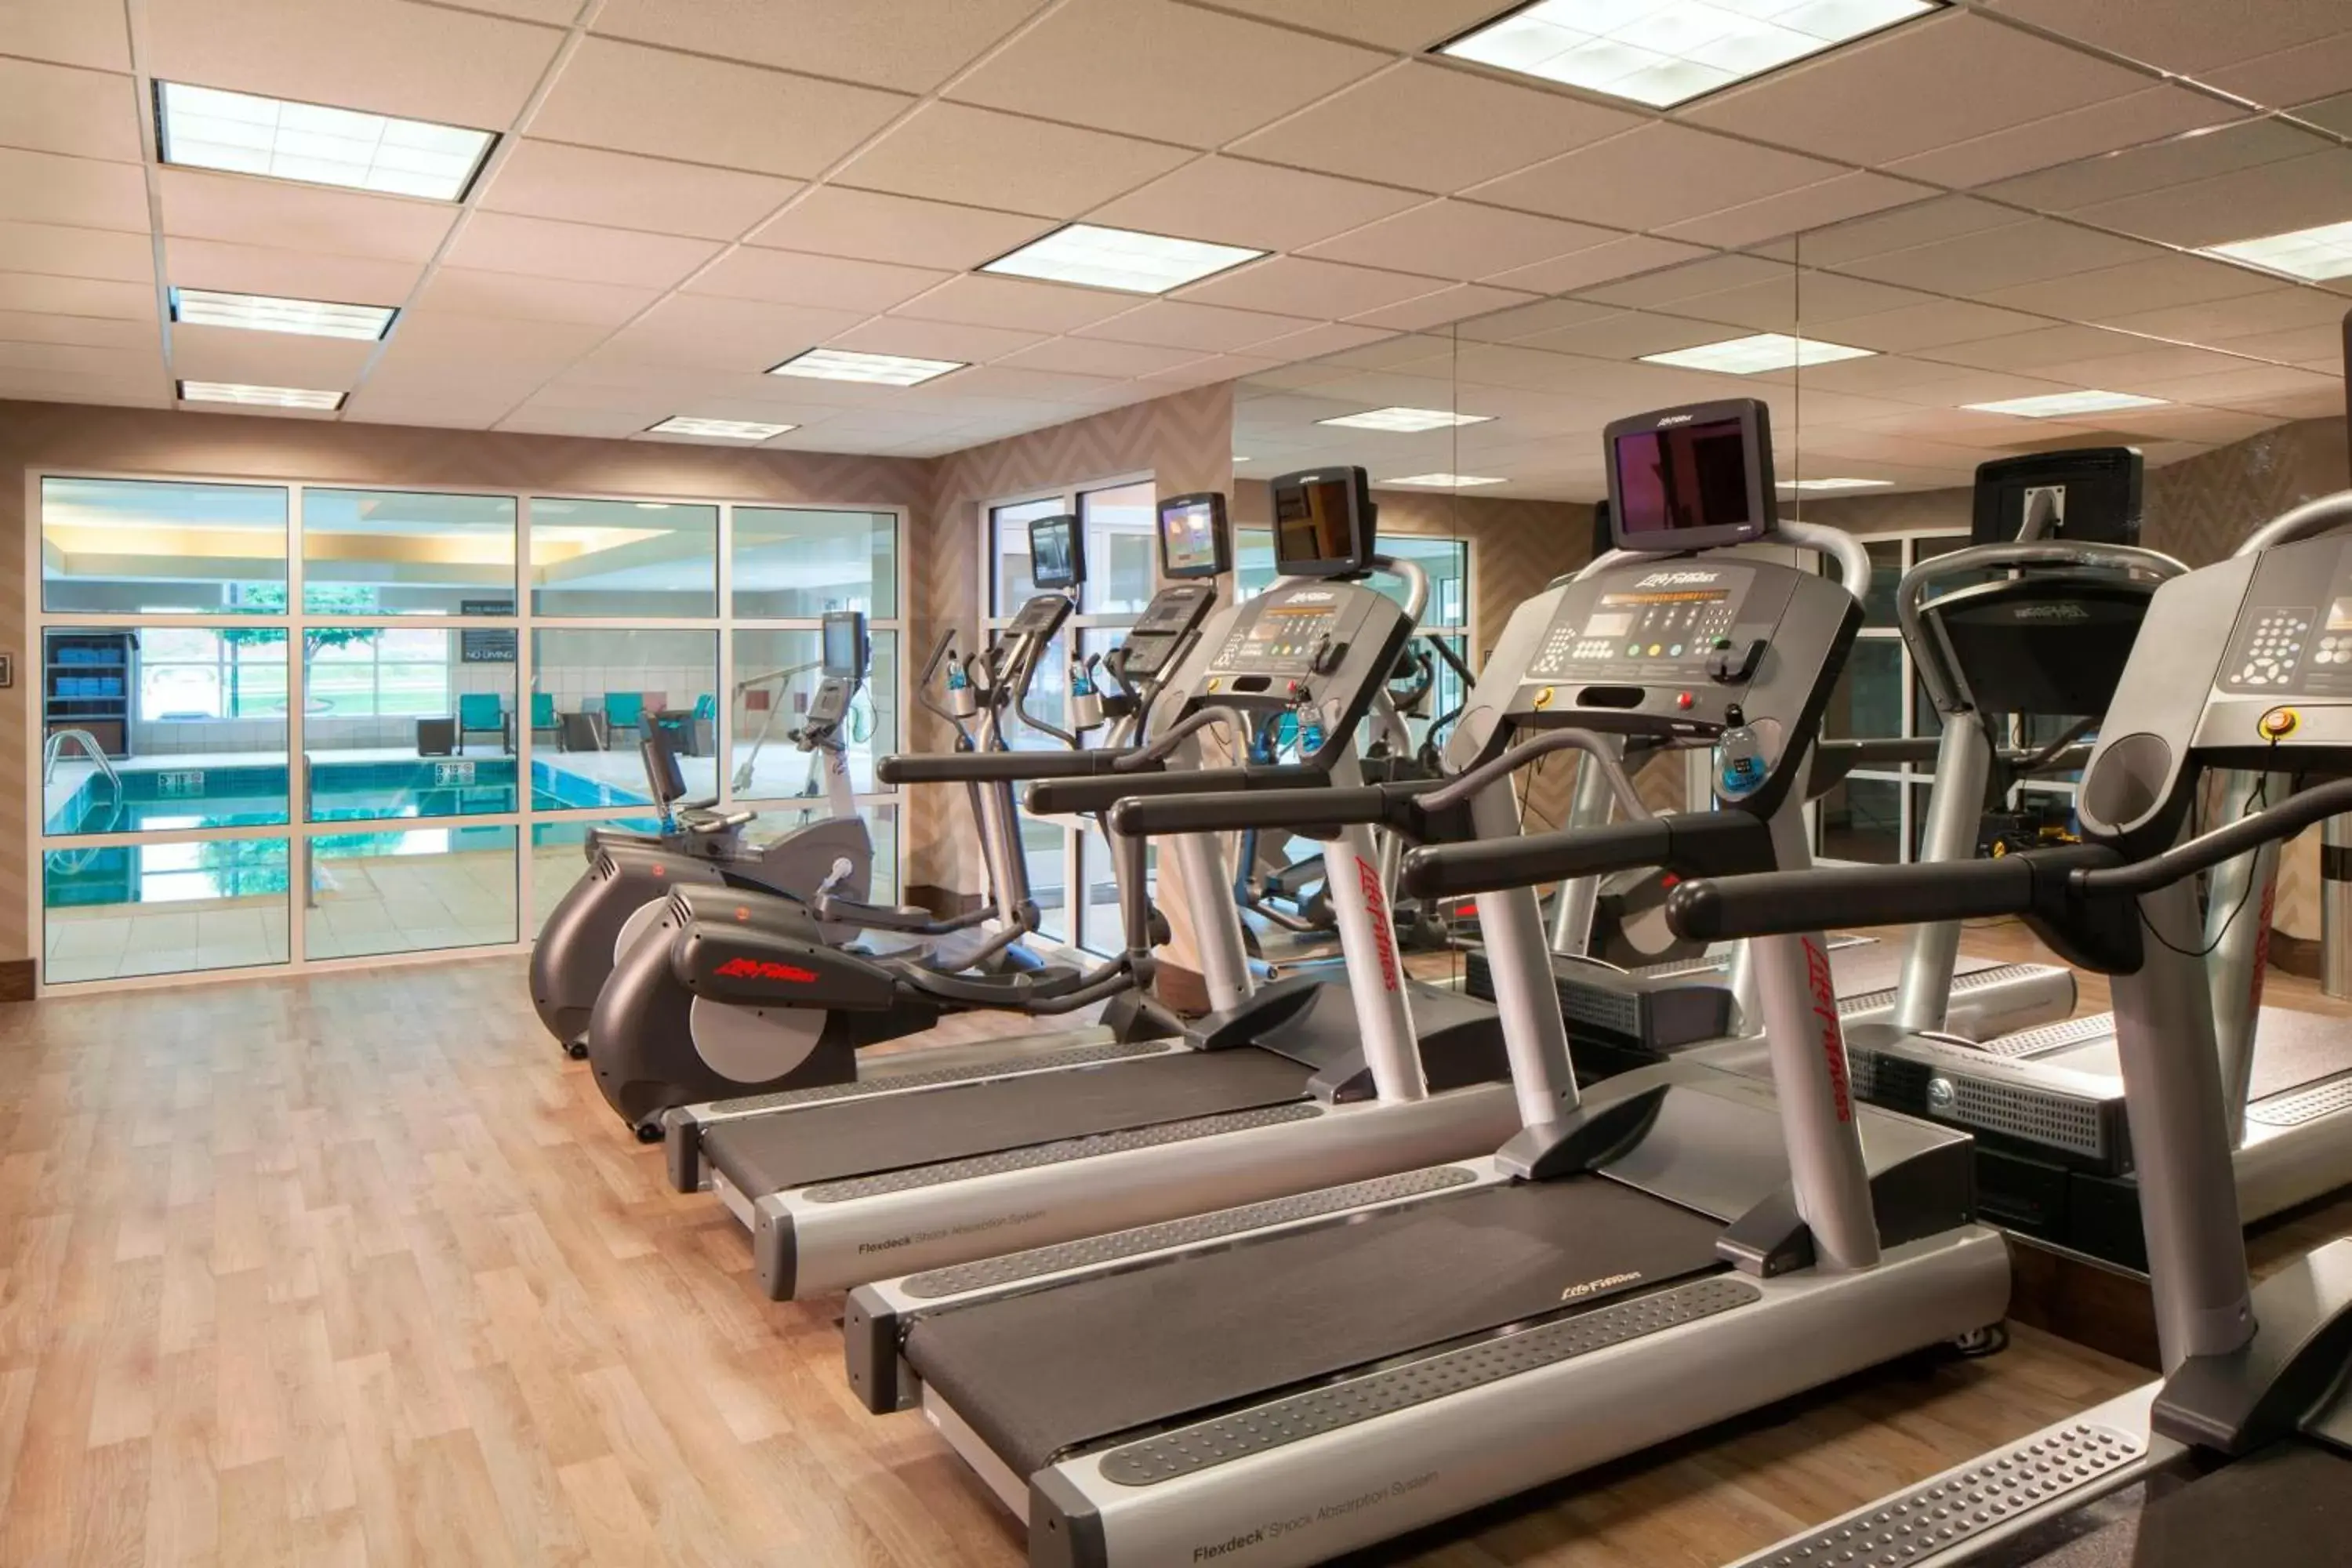 Fitness centre/facilities, Fitness Center/Facilities in Residence Inn by Marriott Stillwater